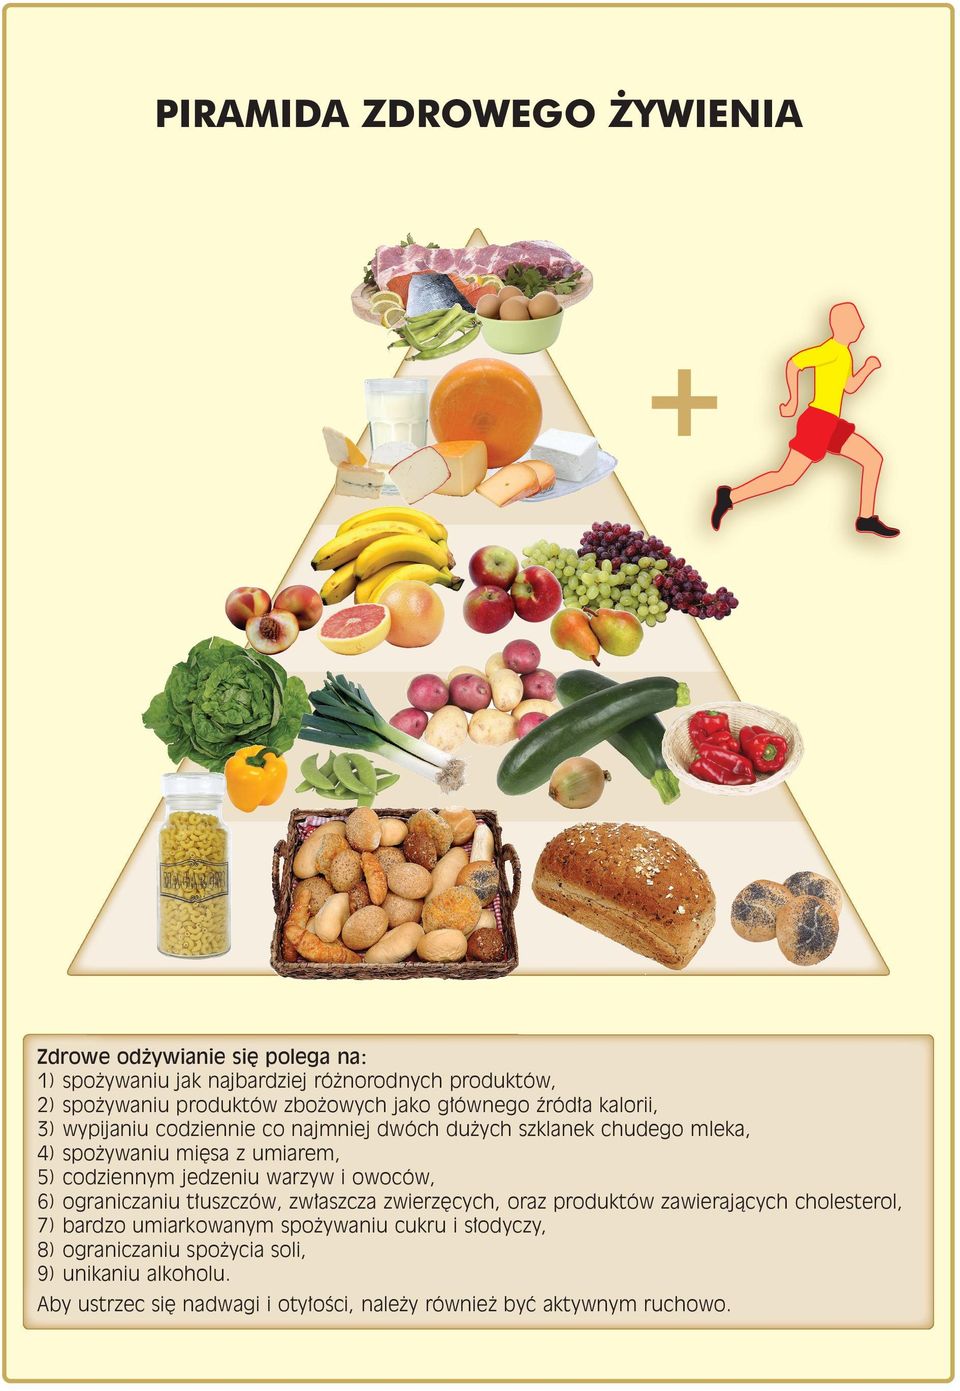 codziennym jedzeniu warzyw i owoców, 6) ograniczaniu t uszczów, zw aszcza zwierz cych, oraz produktów zawierajàcych cholesterol, 7) bardzo